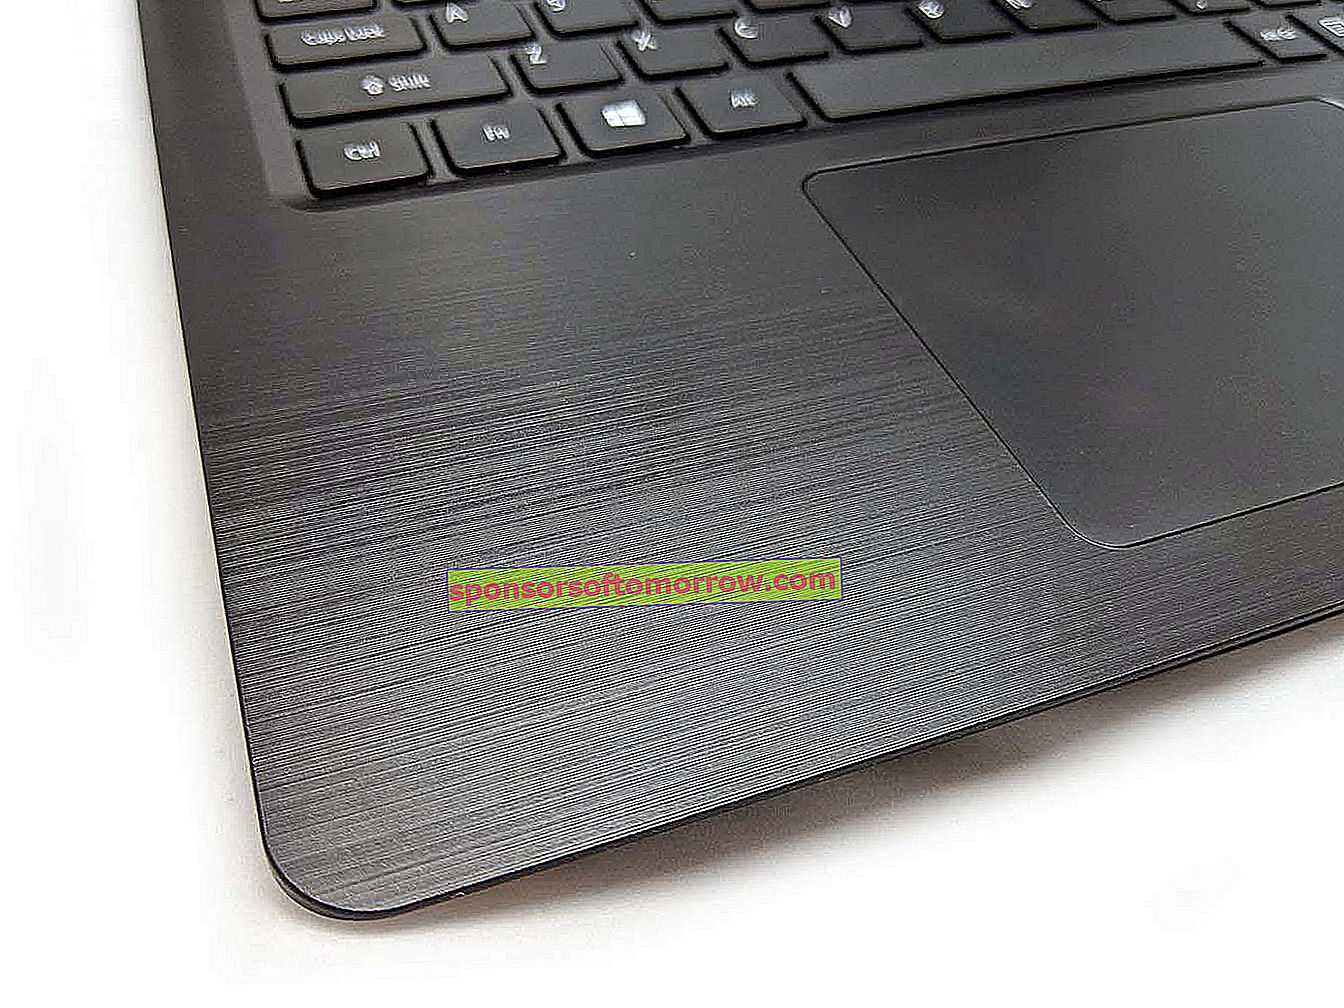 Acer Aspire 5 brushed design detail